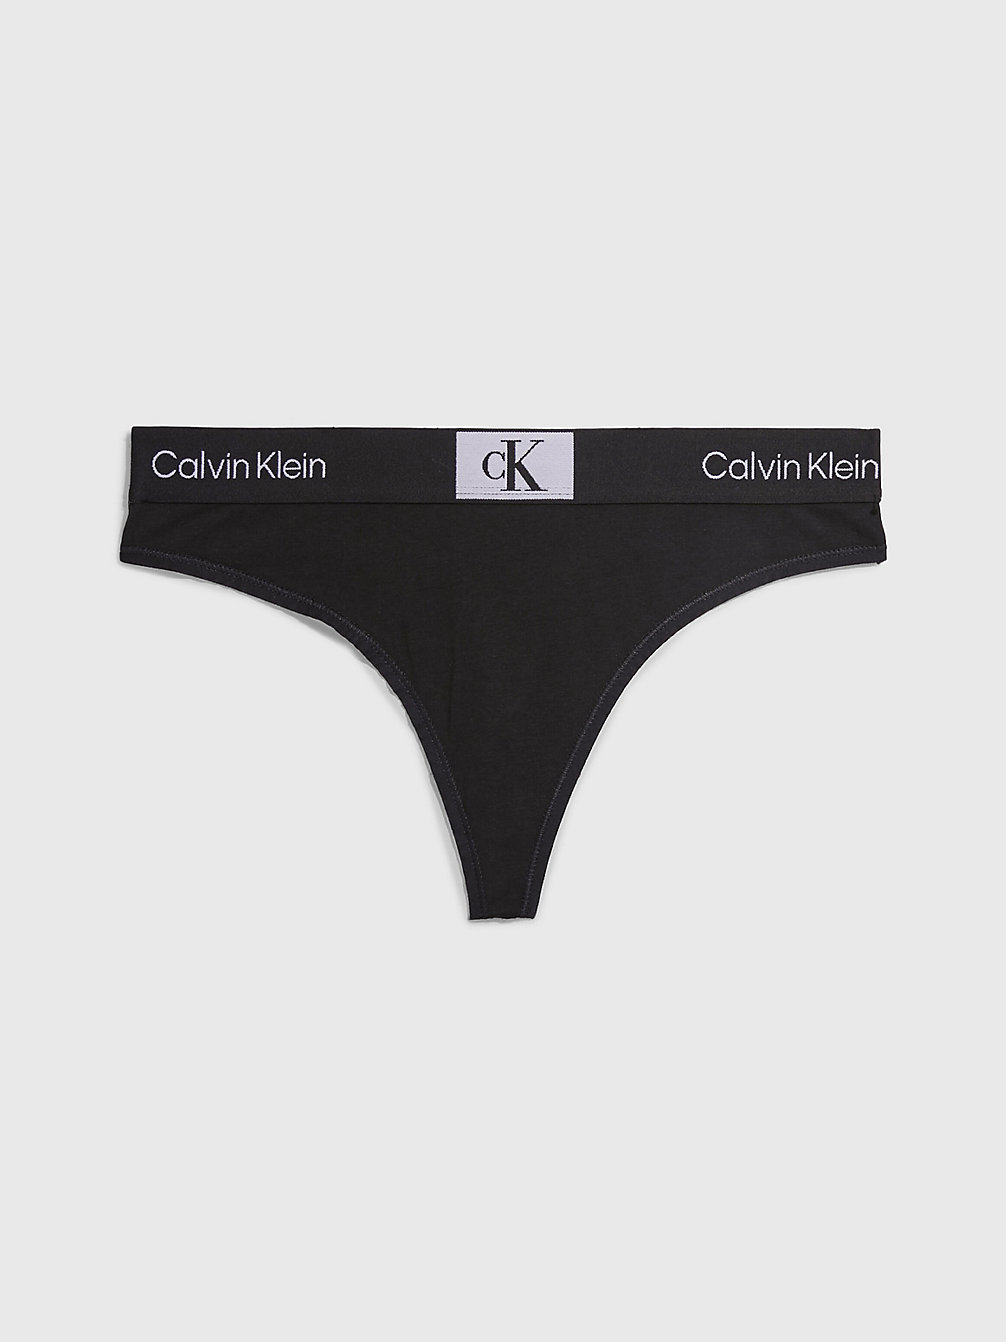 BLACK String - Ck96 undefined Damen Calvin Klein